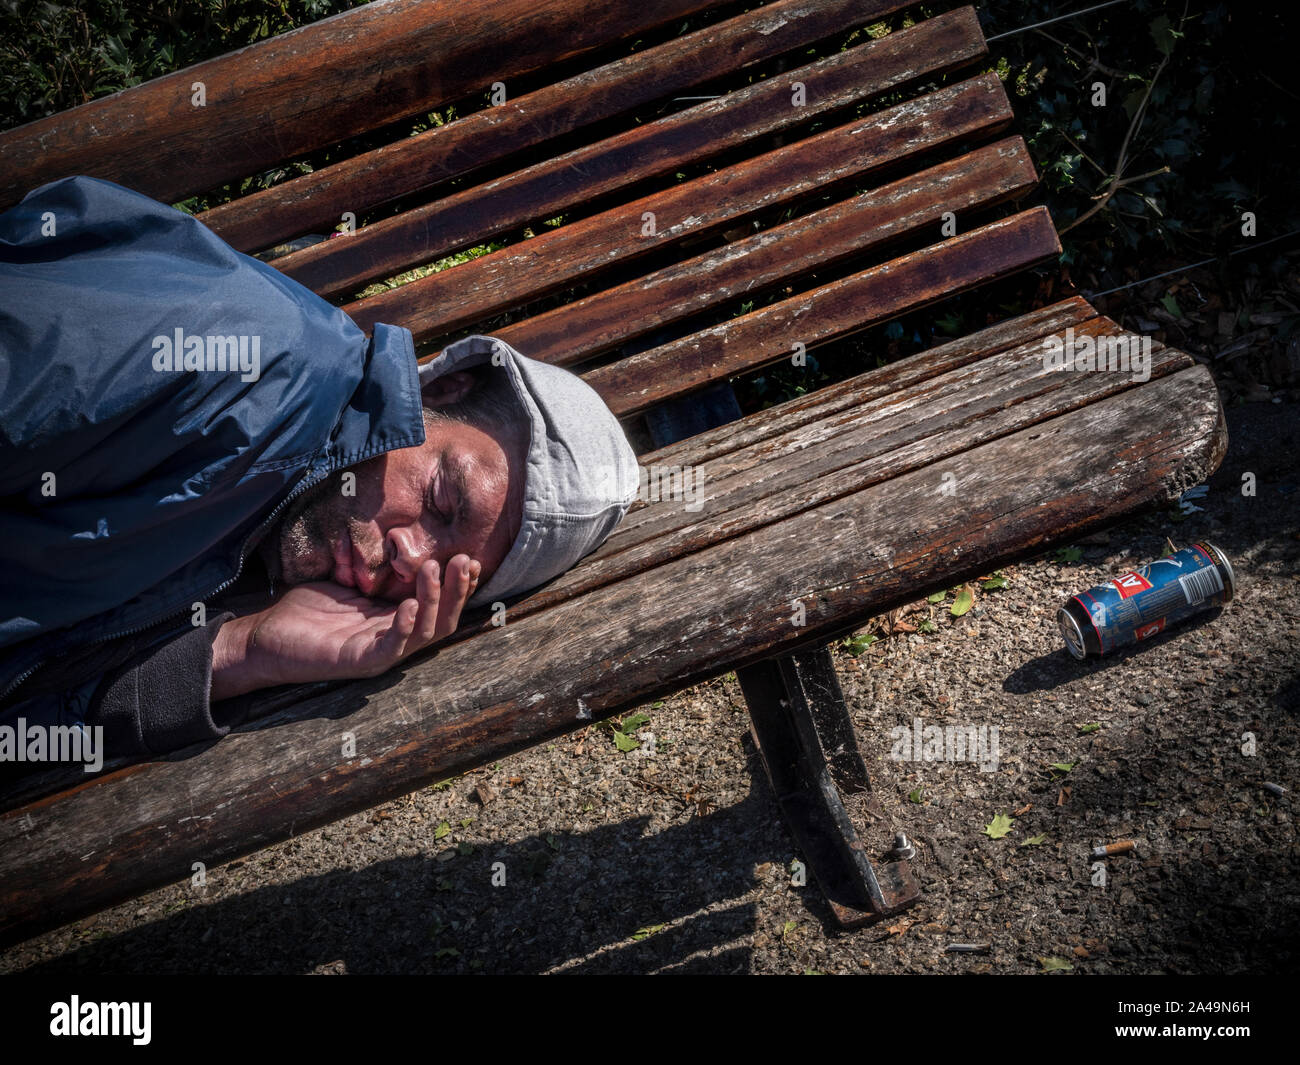 Alkoholismus ALKOHOLIKER VAGRANT junger Mann auf einer Parkbank schlafend in einem selbst induzierten alkoholische Stupor mit leeren starken Lagerbier und Zigarettenkippen auf dem Boden in der Nähe verworfen. Schatten umschließen ihn als er schläft. Stockfoto